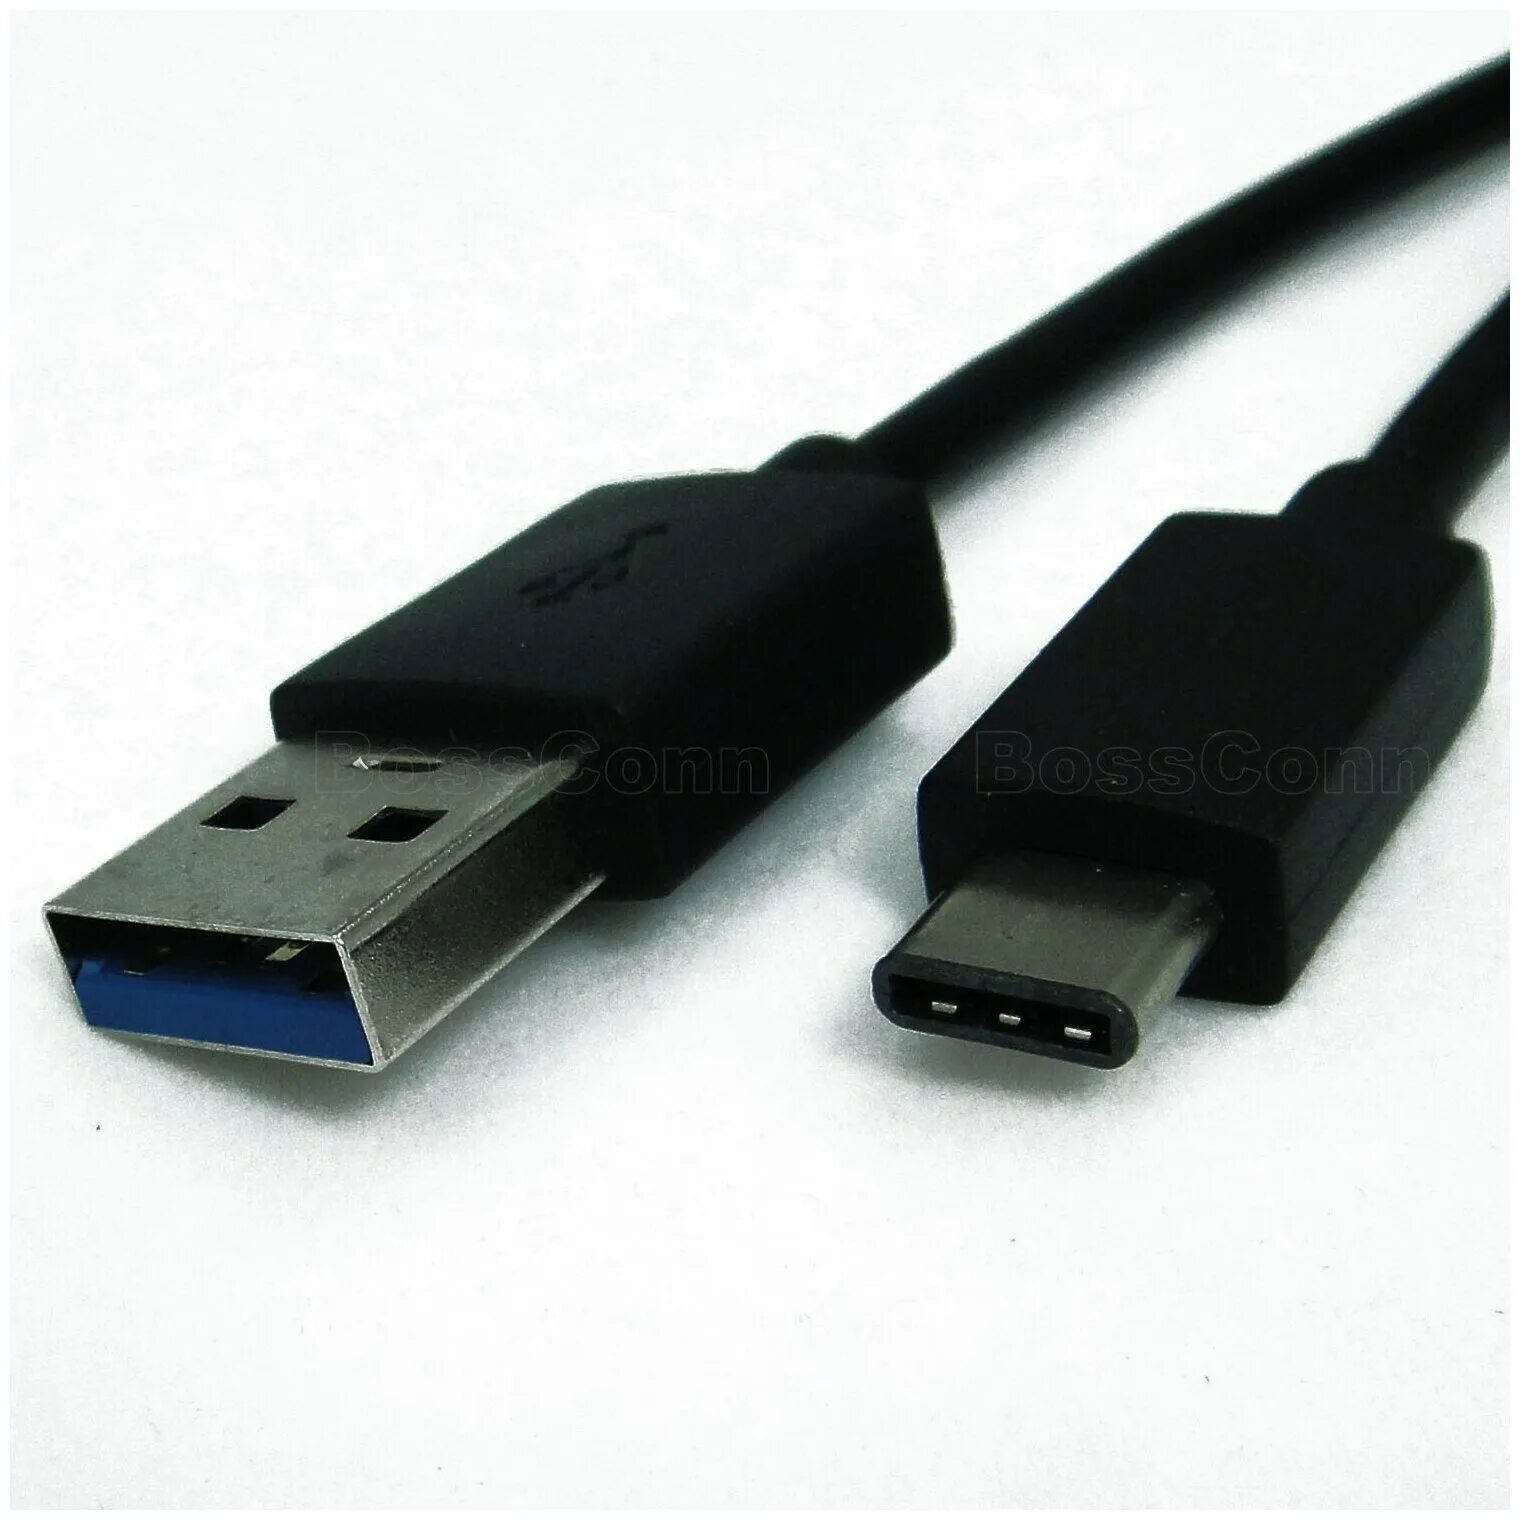 USB 3.0 USB Type-c. Юсб 3.1 Type c. USB Type-c, USB 3.0 Type-a. Разъемов USB 3.0 (Type-c). Usb type c d